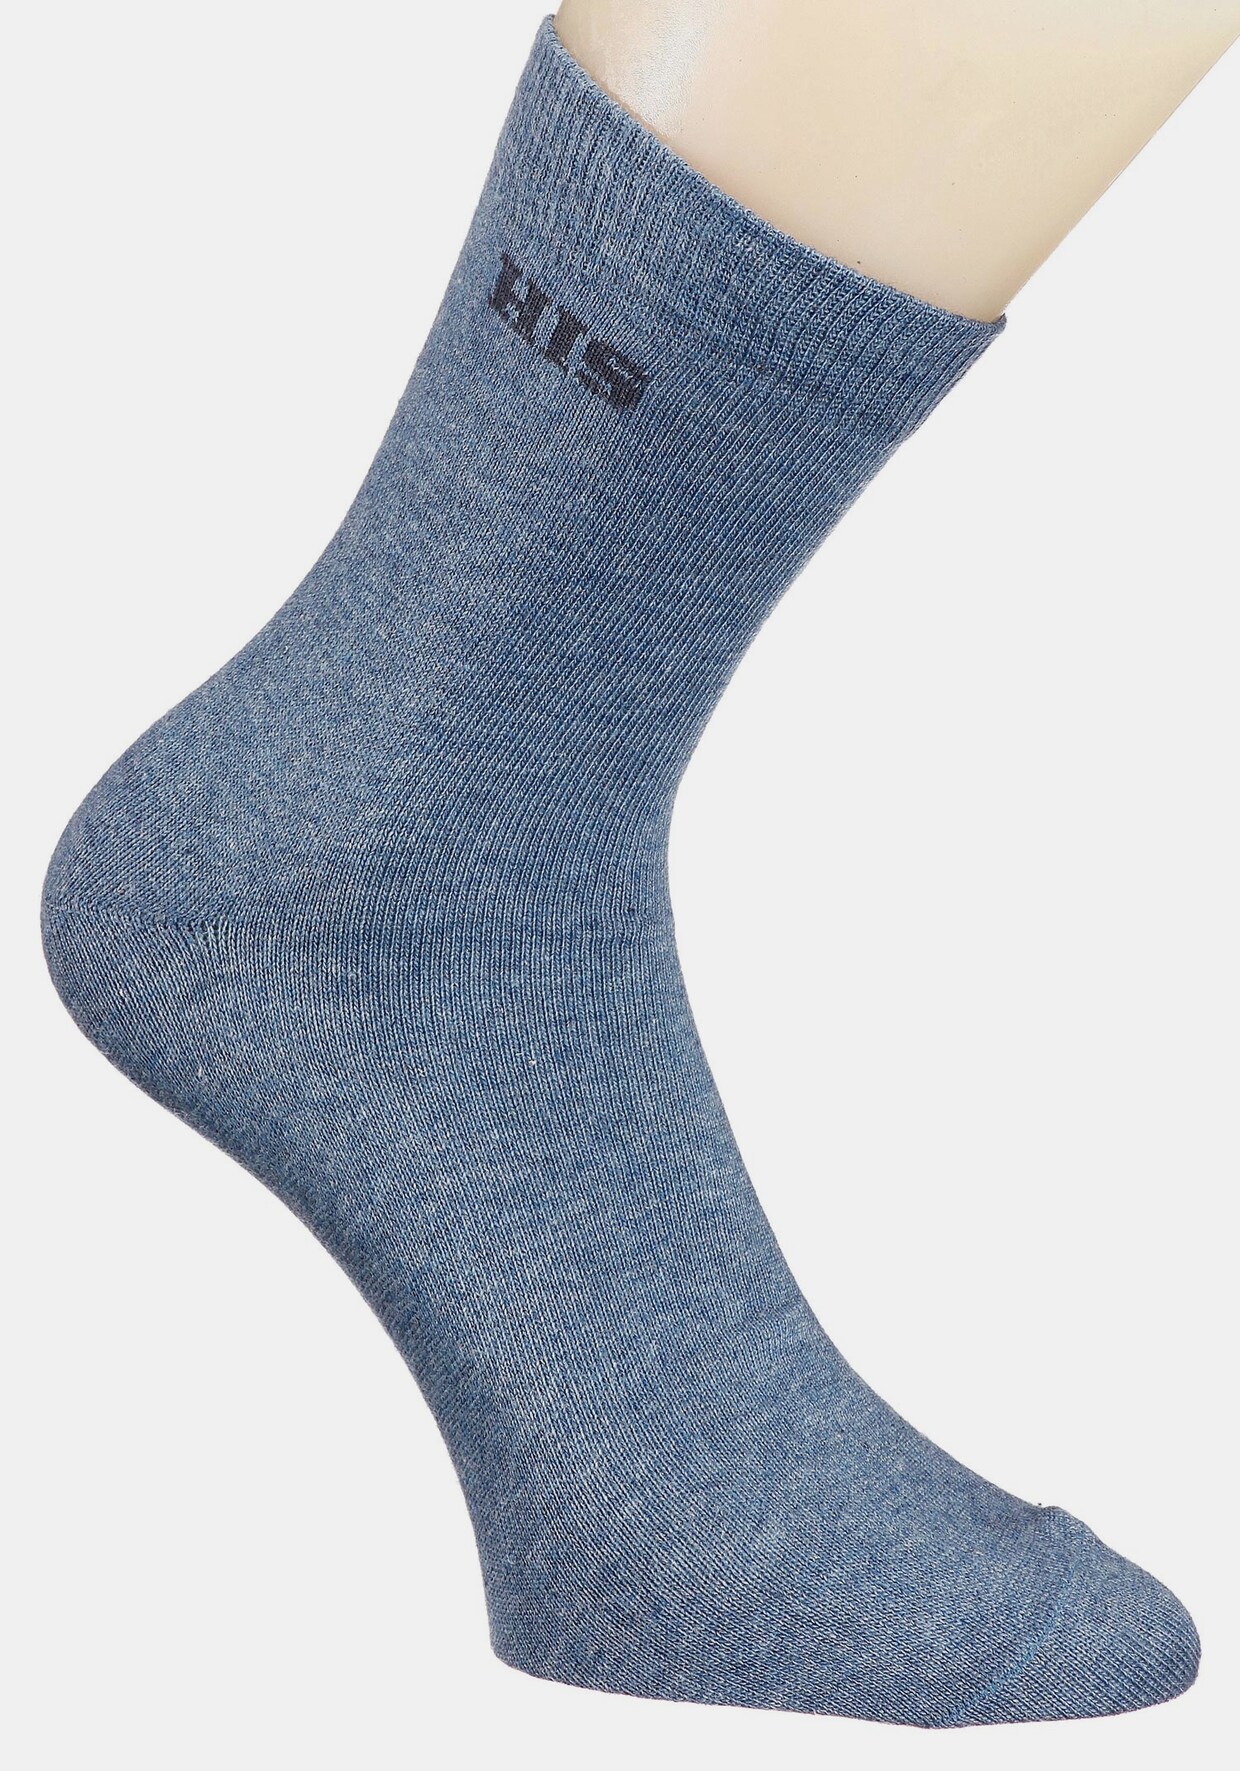 H.I.S Basicsocken - 1x hellblau + 1x blau + 1x grau + 1x schwarz